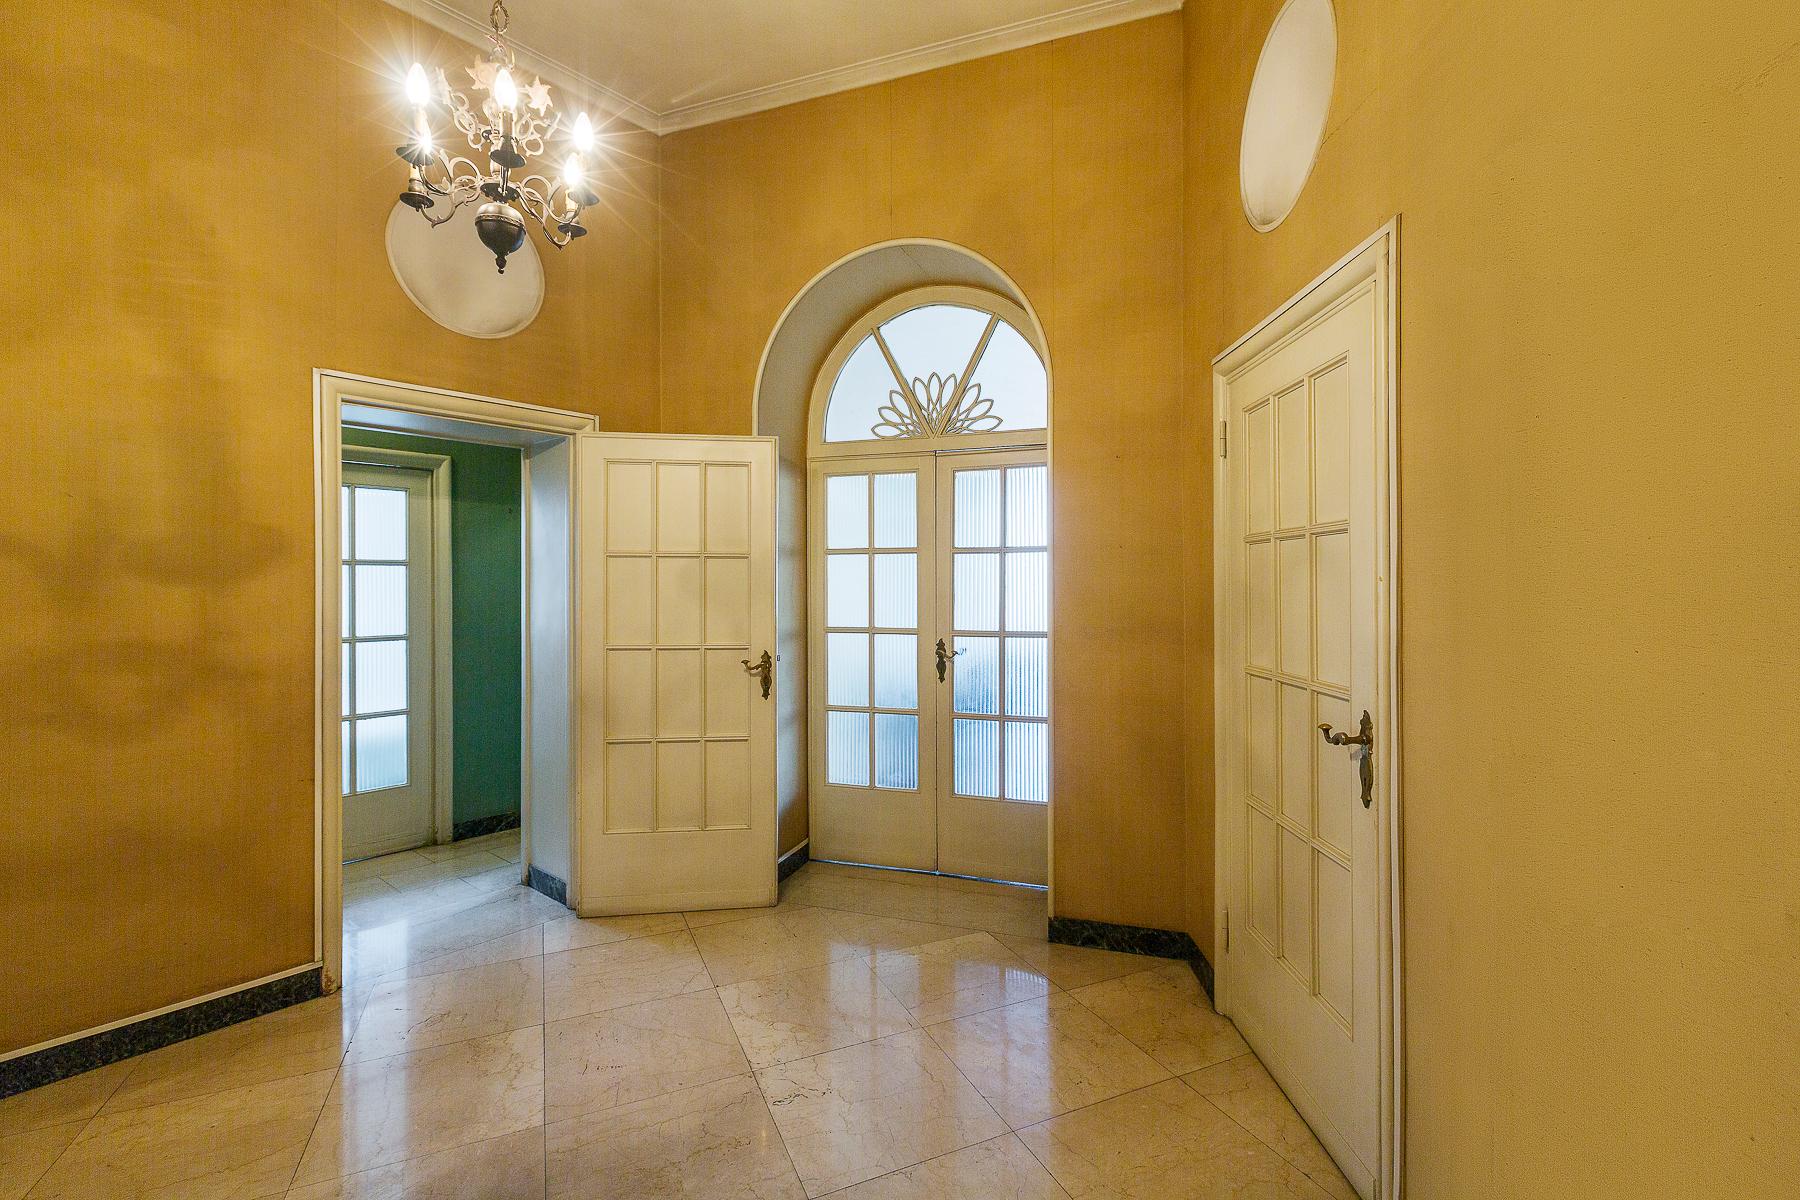 Elegant apartment with original interior decoration - 4